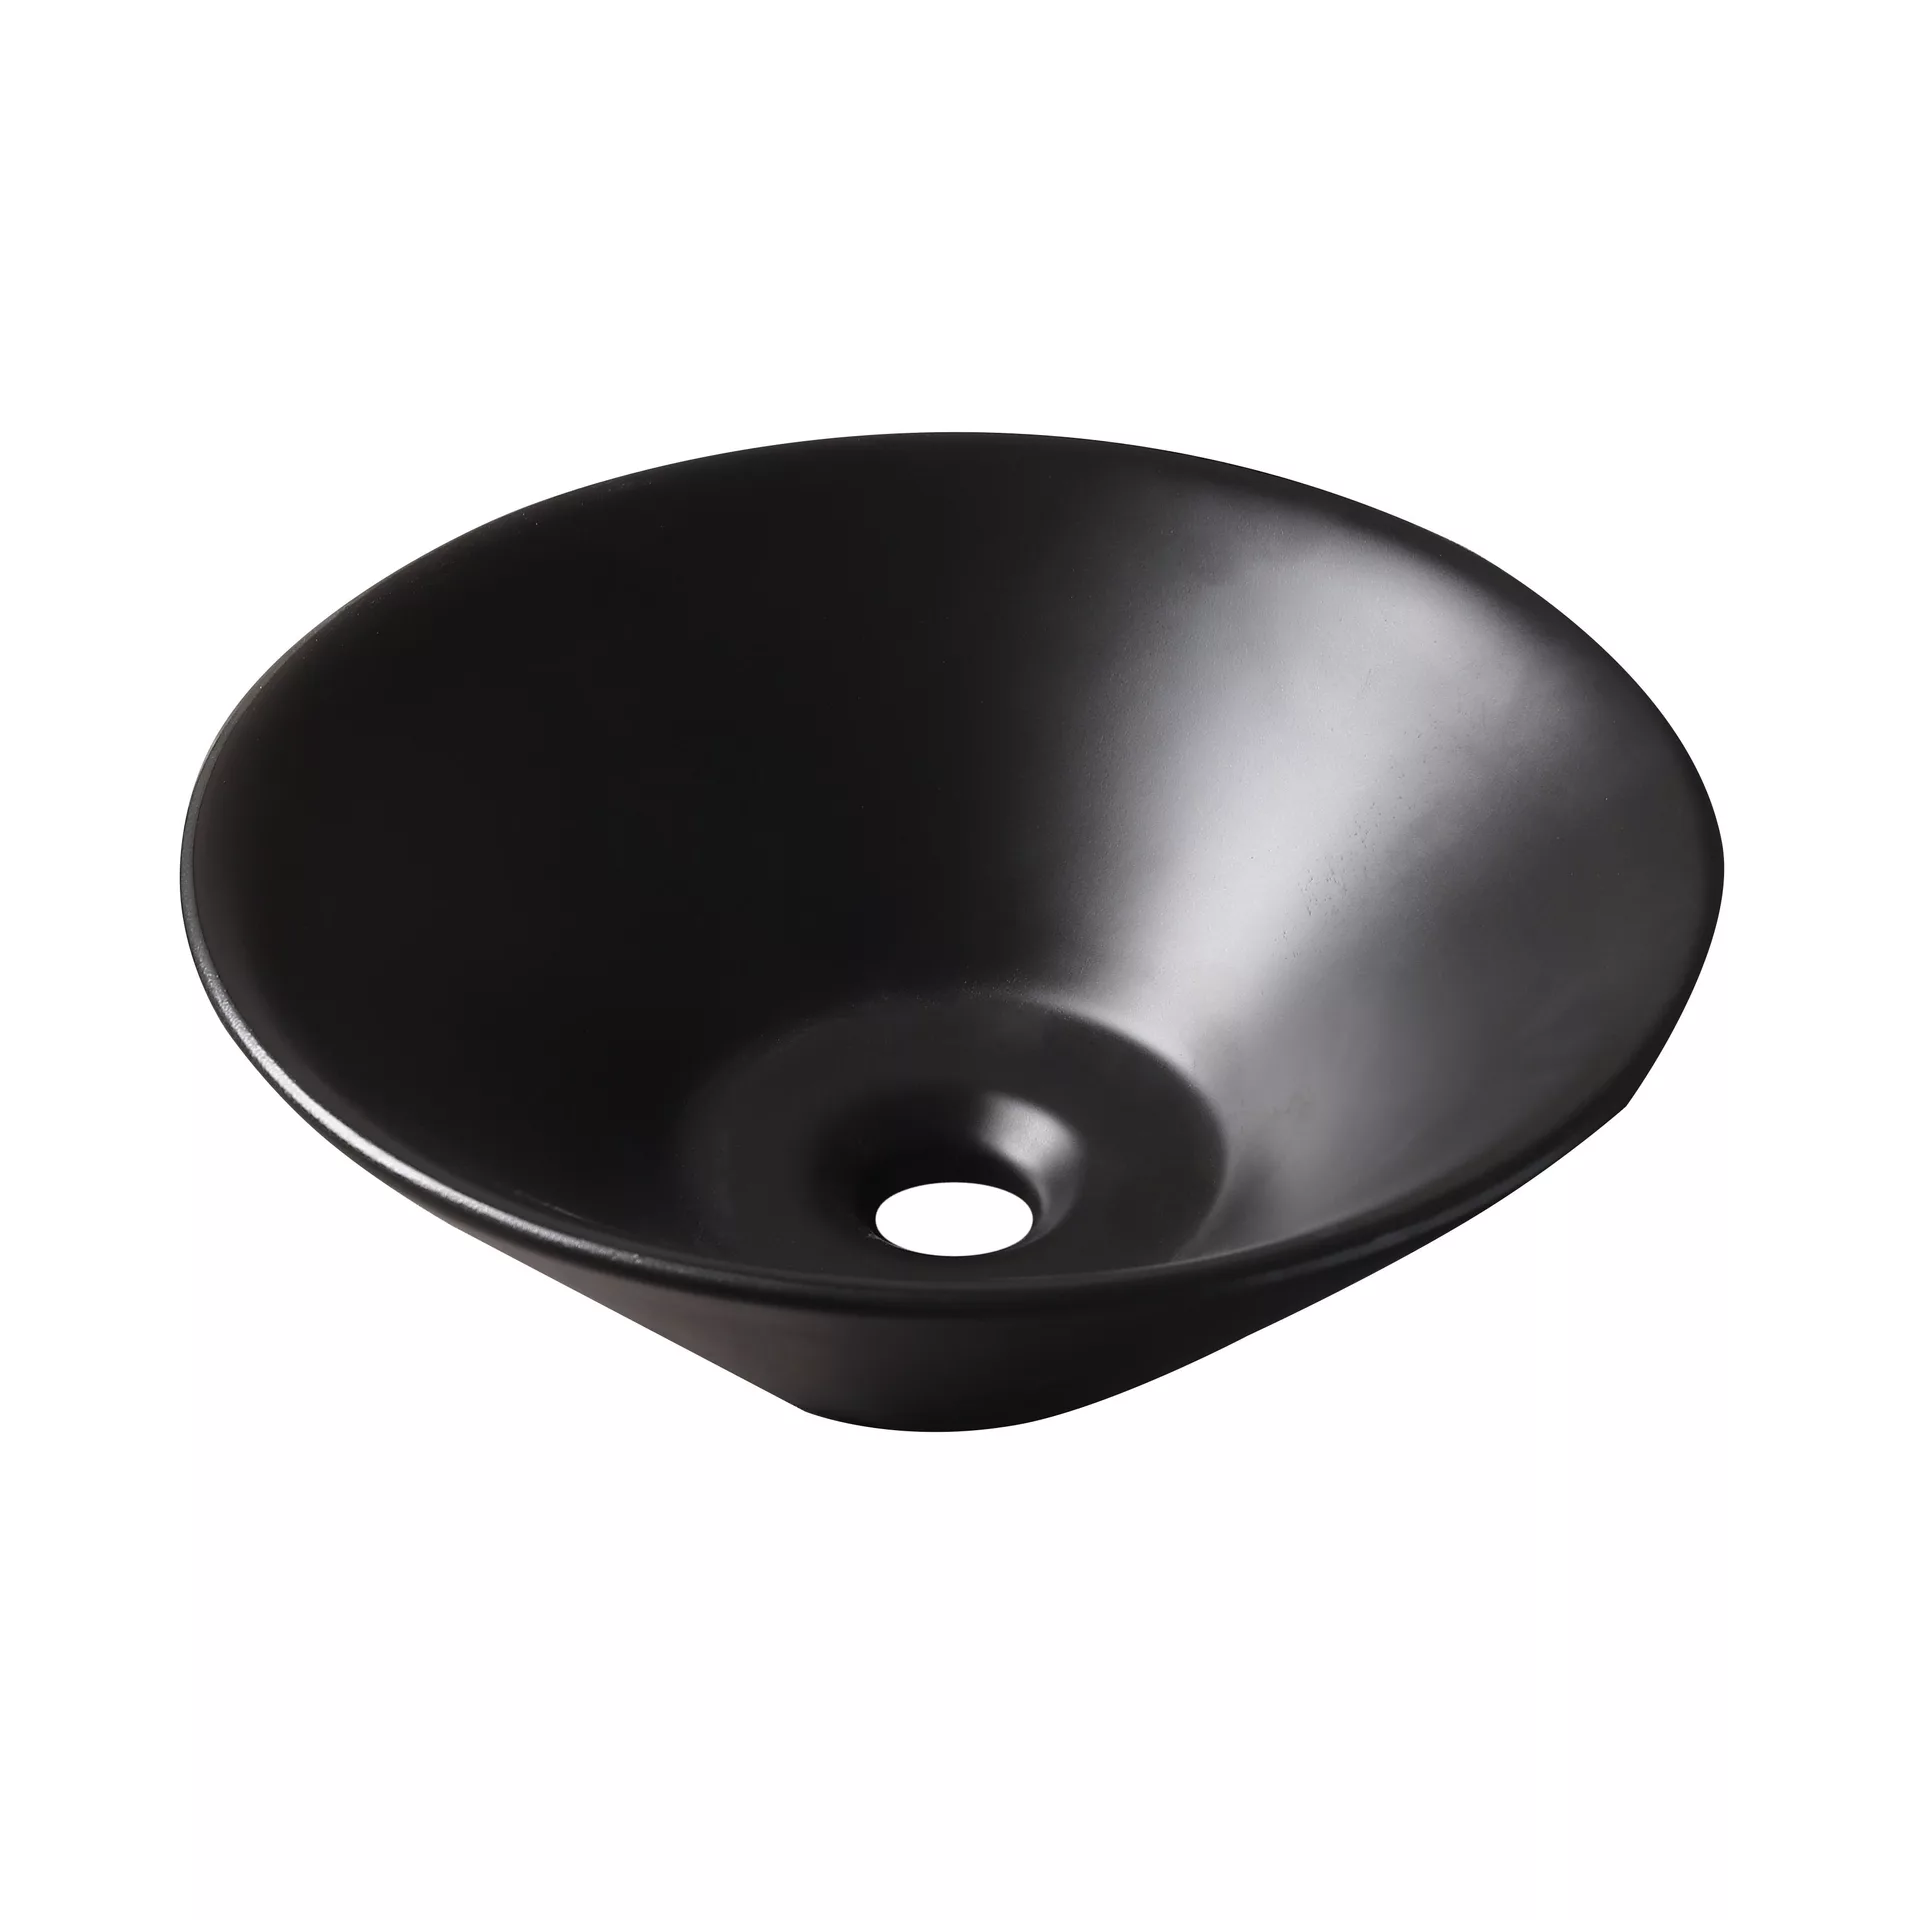 Накладная раковина для ванной GiD N9102bg черная керамическая петля накладная черная amig 552 240х30х1 5 2 комплект 2 шт